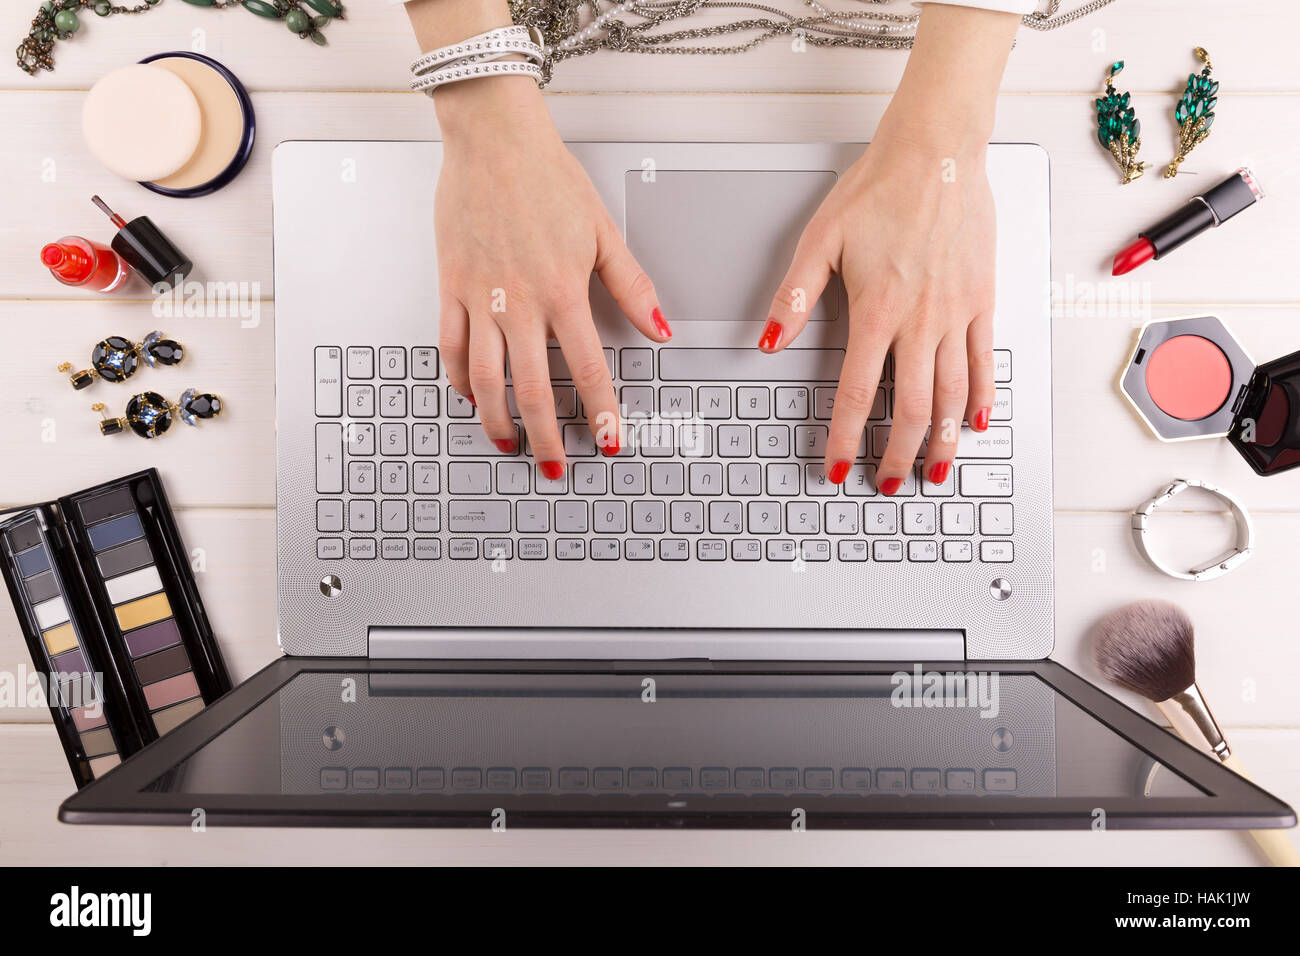 Concepto blogger de moda - Mujer con uñas pulido roja trabajando en el portátil Foto de stock